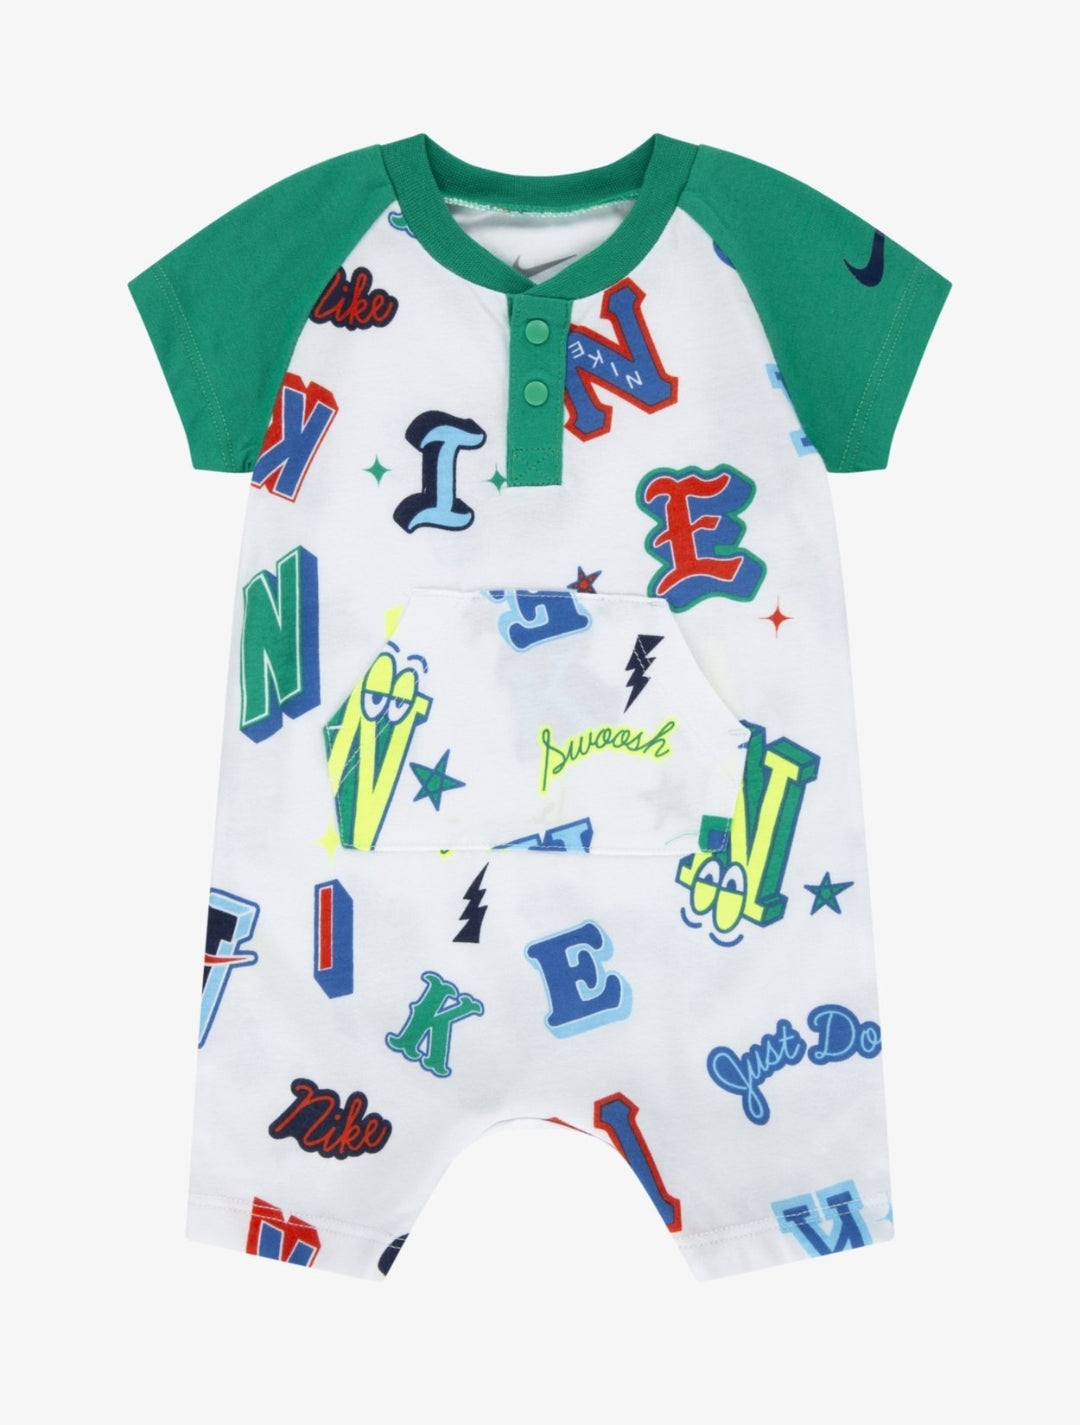 Nike combinaison short bébé manches courtes green/multi